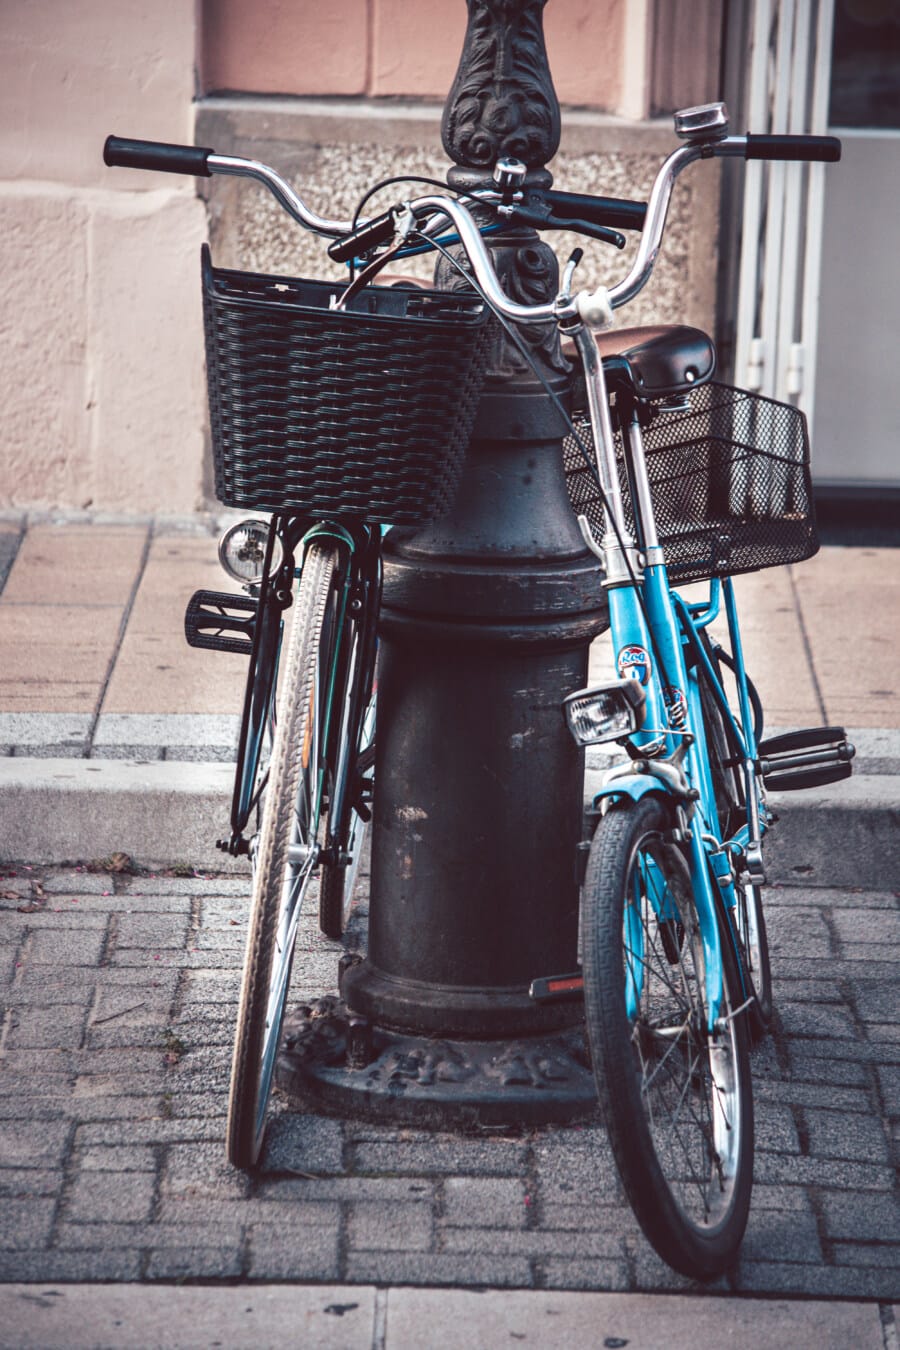 vélo, style ancien, panier en osier, France, volant de direction, nostalgie, chaussée, rue, parking, roue